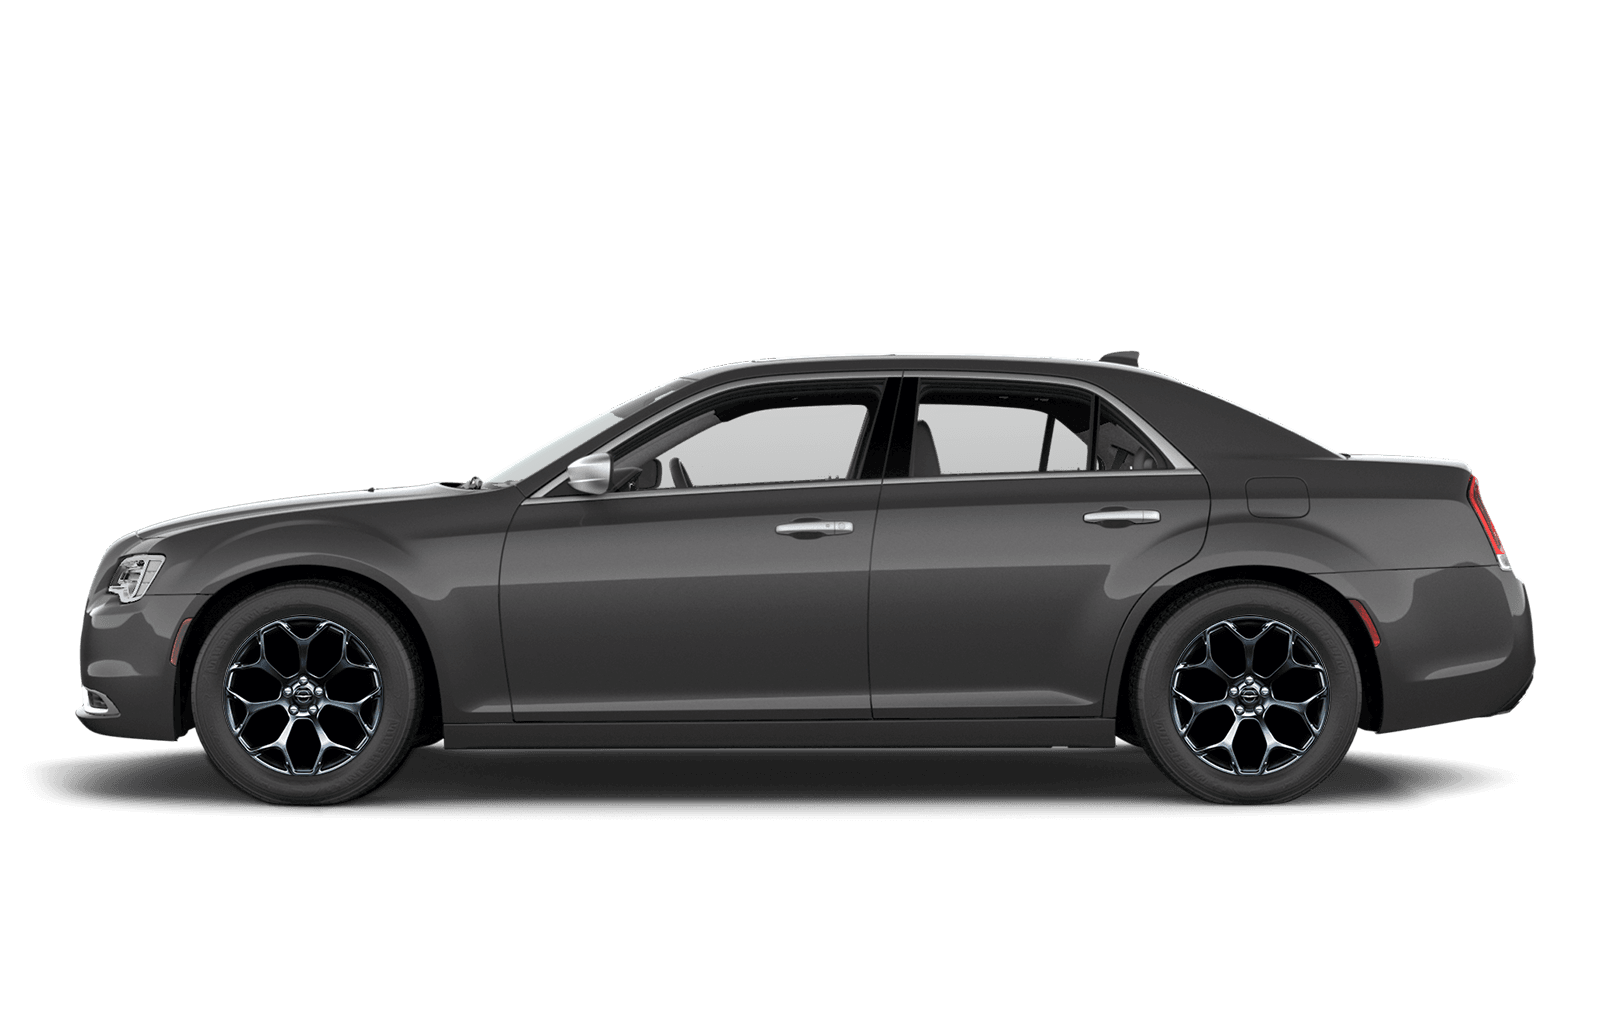 2019 Chrysler 300 Luxury Sedan Chrysler Canada